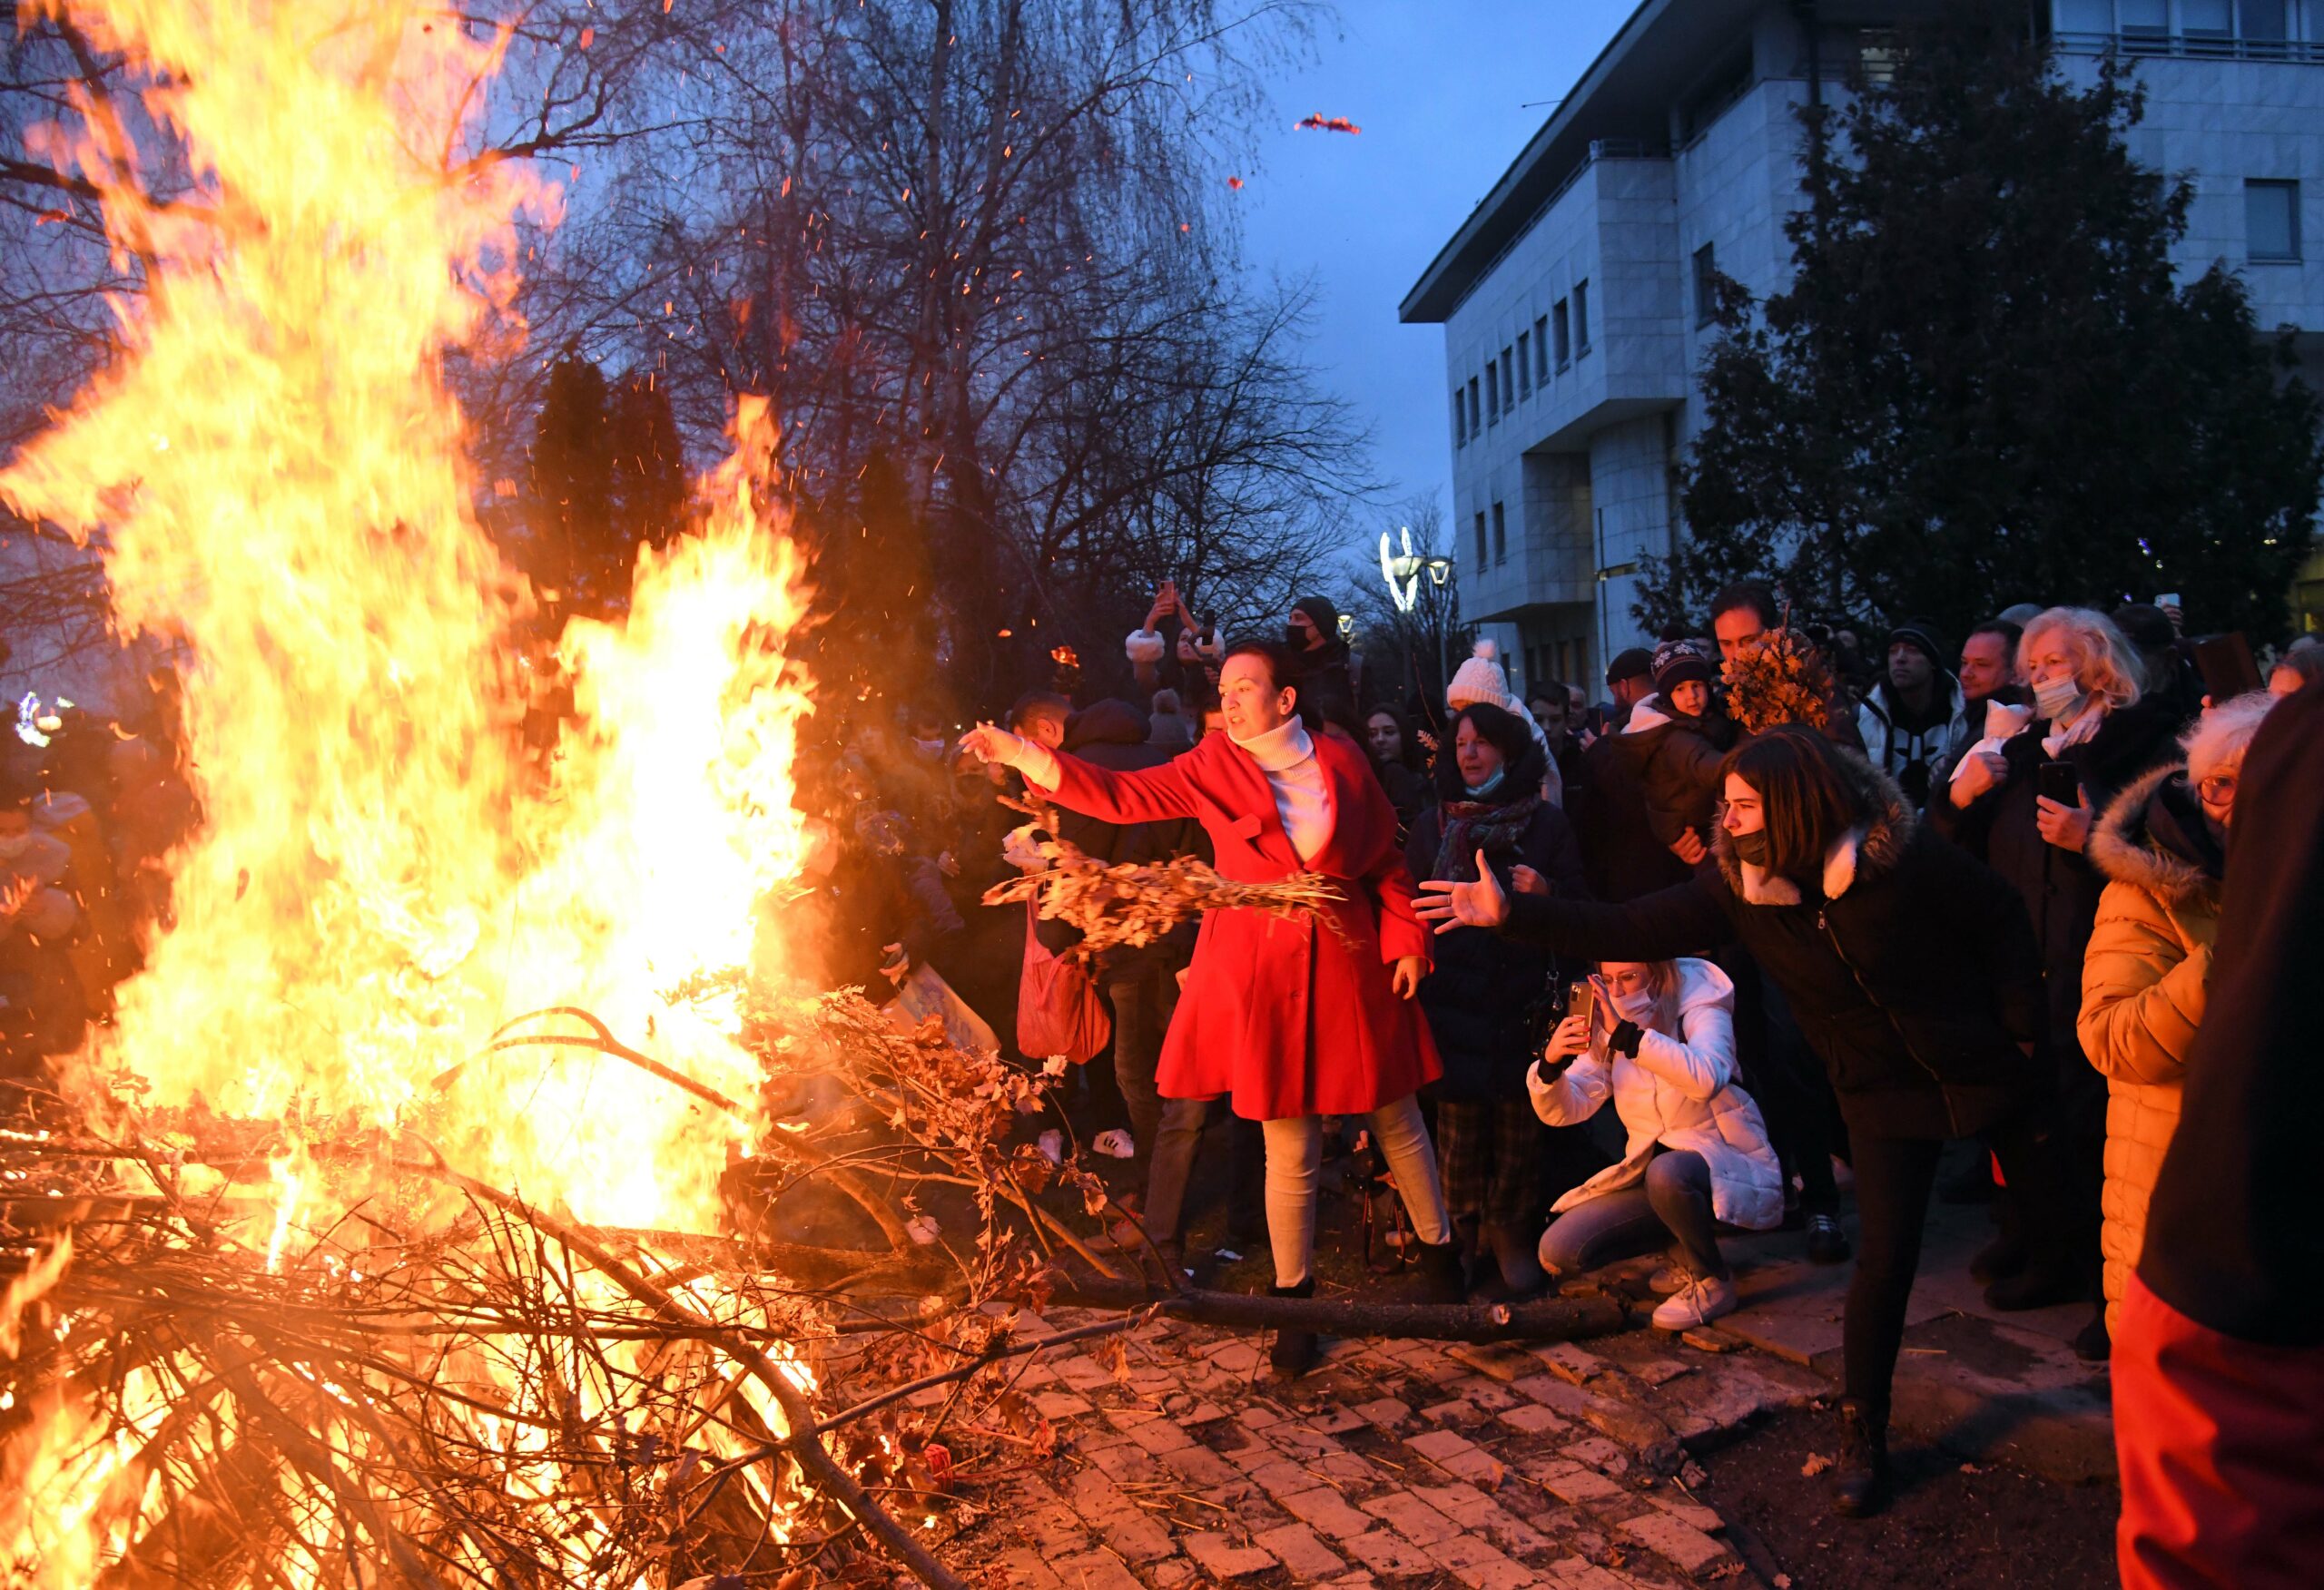 Люди на церемонии сжигания сухих дубовых ветвей перед храмом Святого Саввы в канун православного Рождества в Белграде, Сербия. Фото Predrag Milosavljevic / TASS / Scanpix / Leta